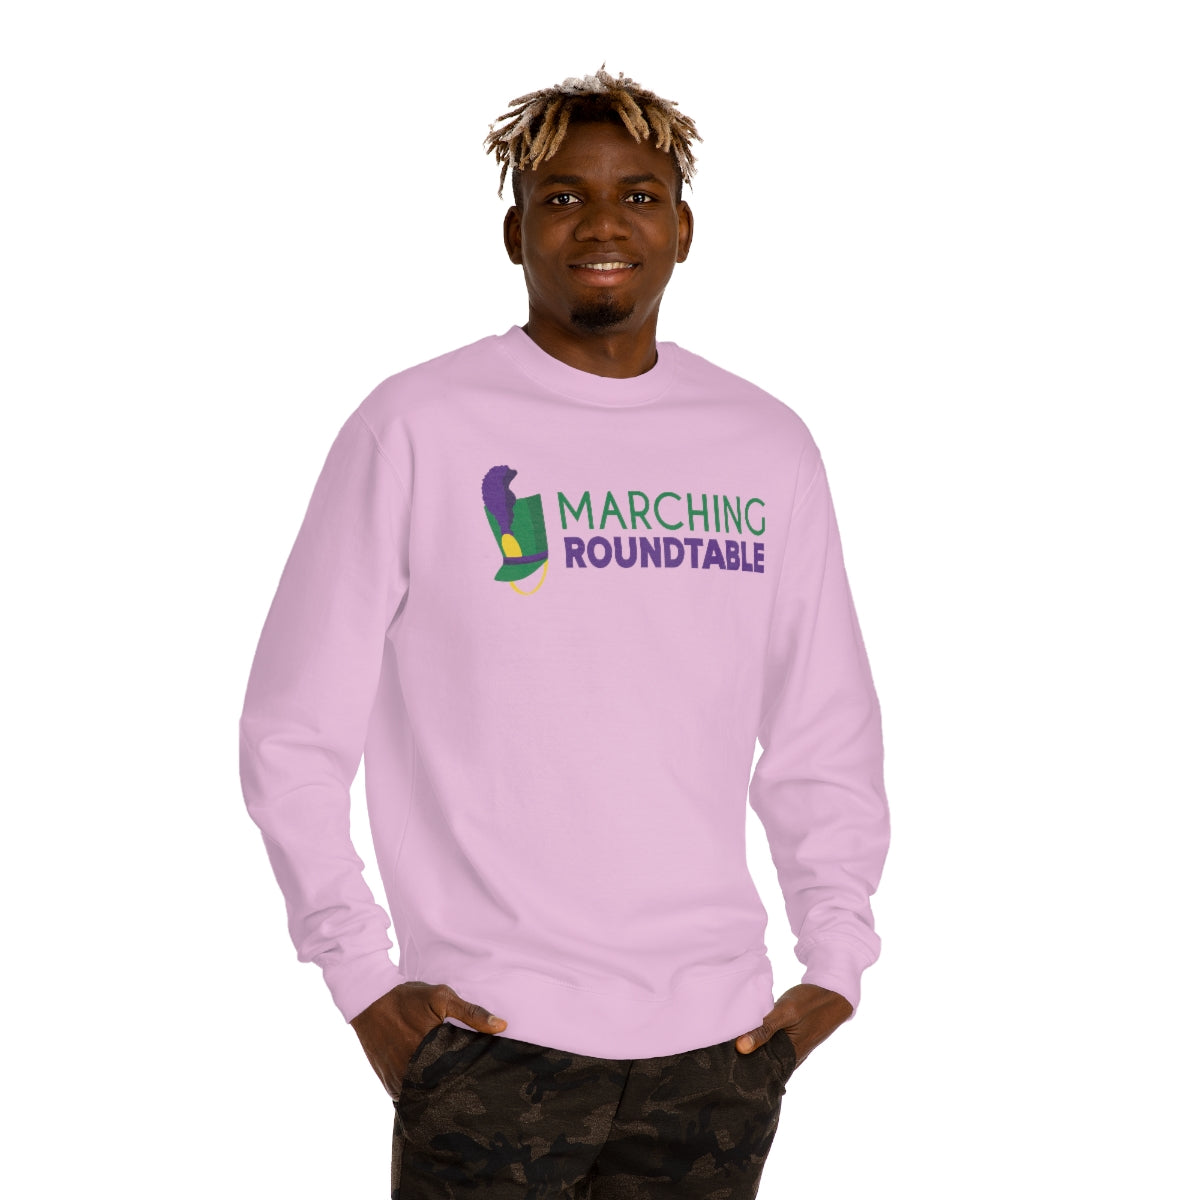 Roundtable Sweatshirt